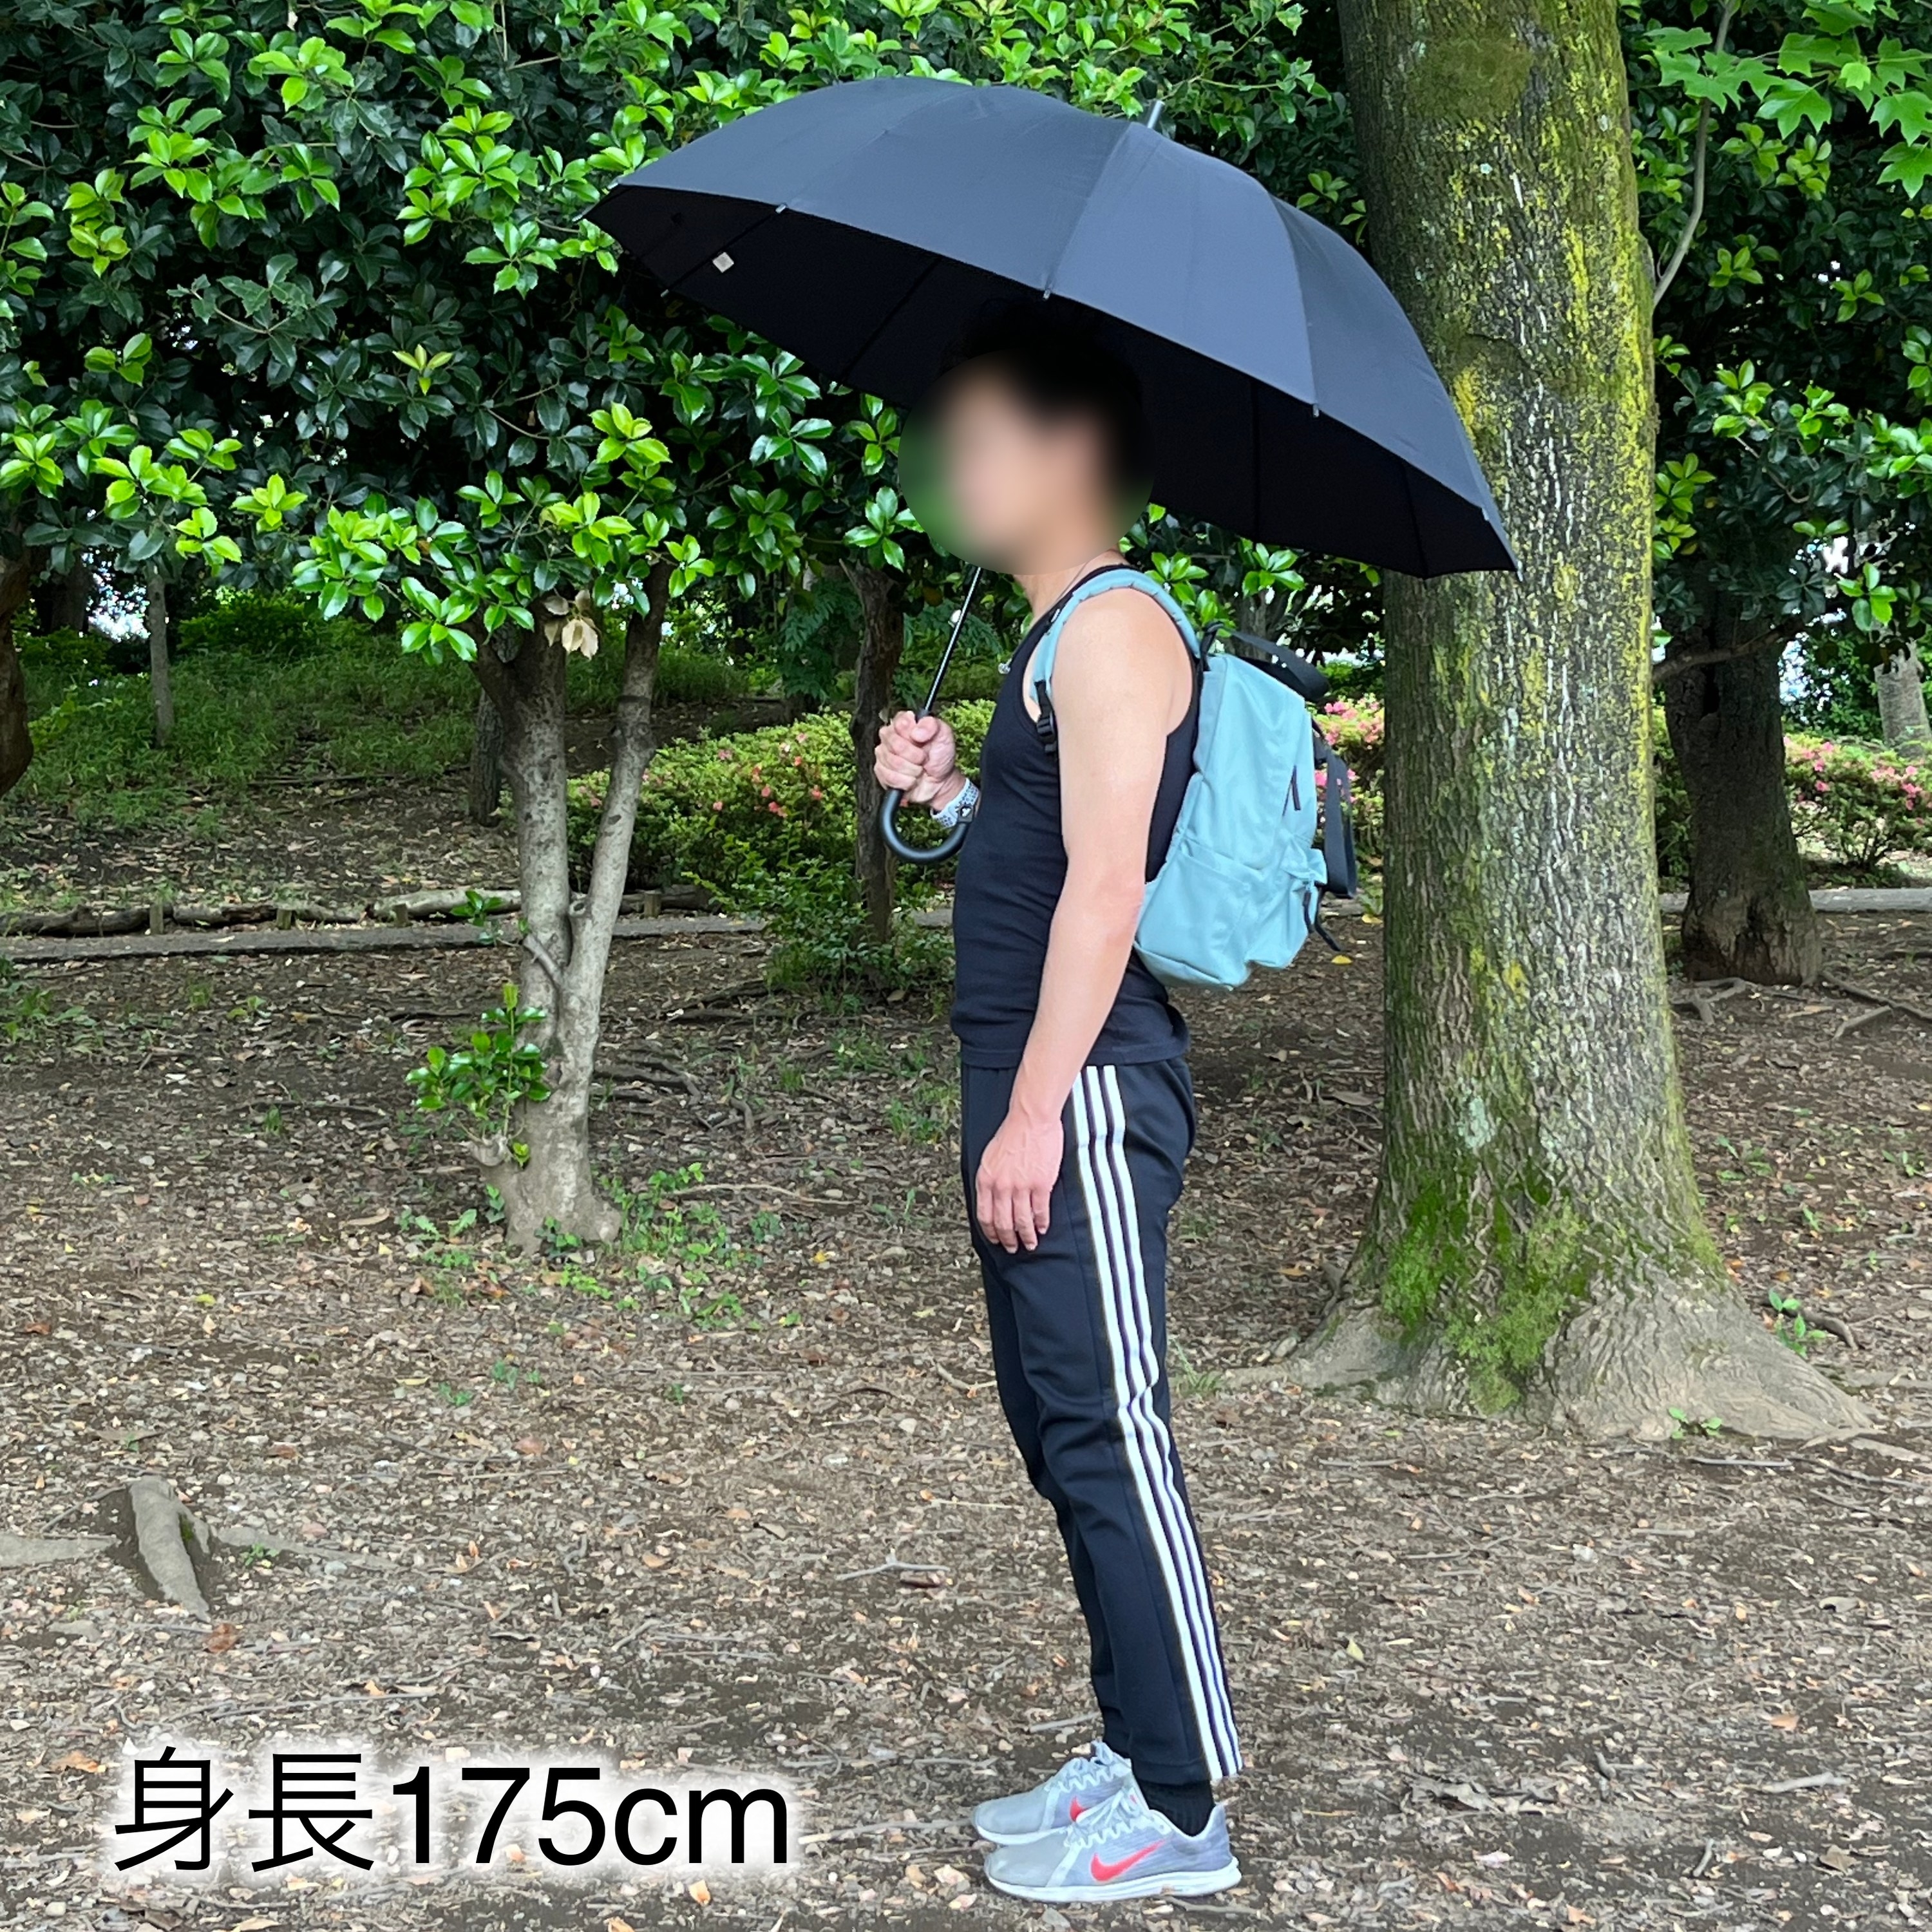 無印良品のおすすめアイテム「しるしのつけられる 大きい傘」